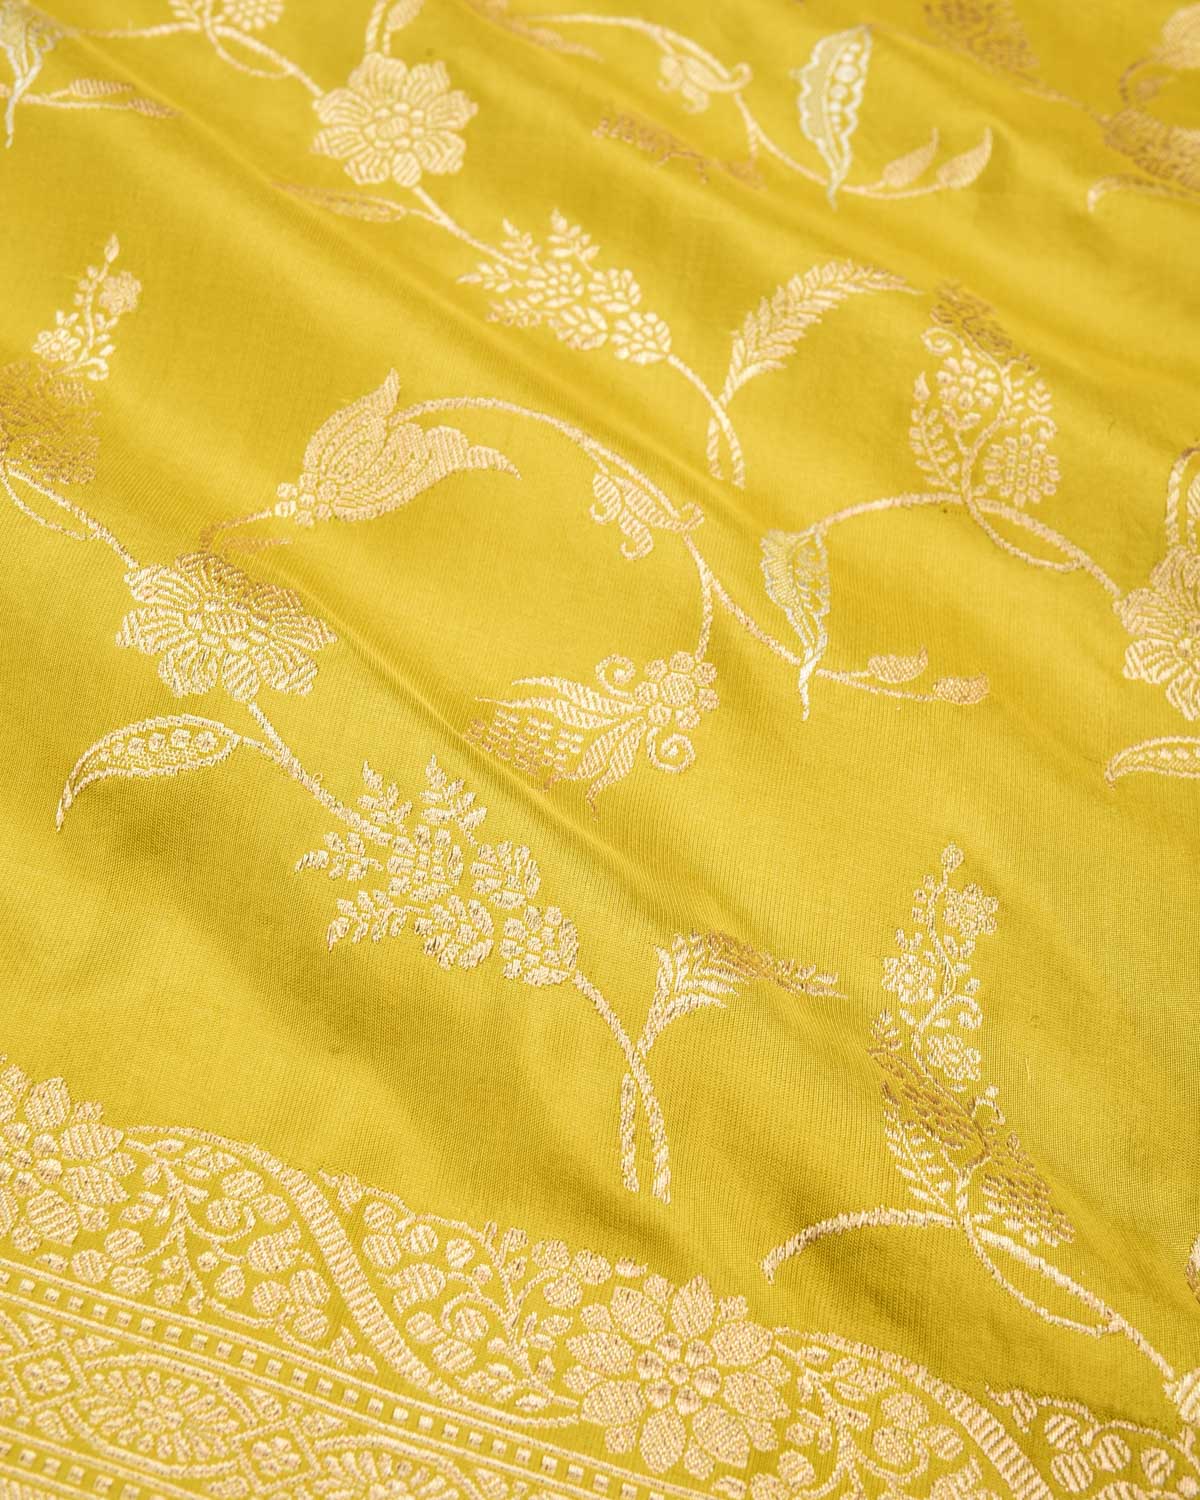 Lime Green Banarasi Gold & Silver Zari Jaal Kadhuan Brocade Handwoven Katan Silk Saree - By HolyWeaves, Benares